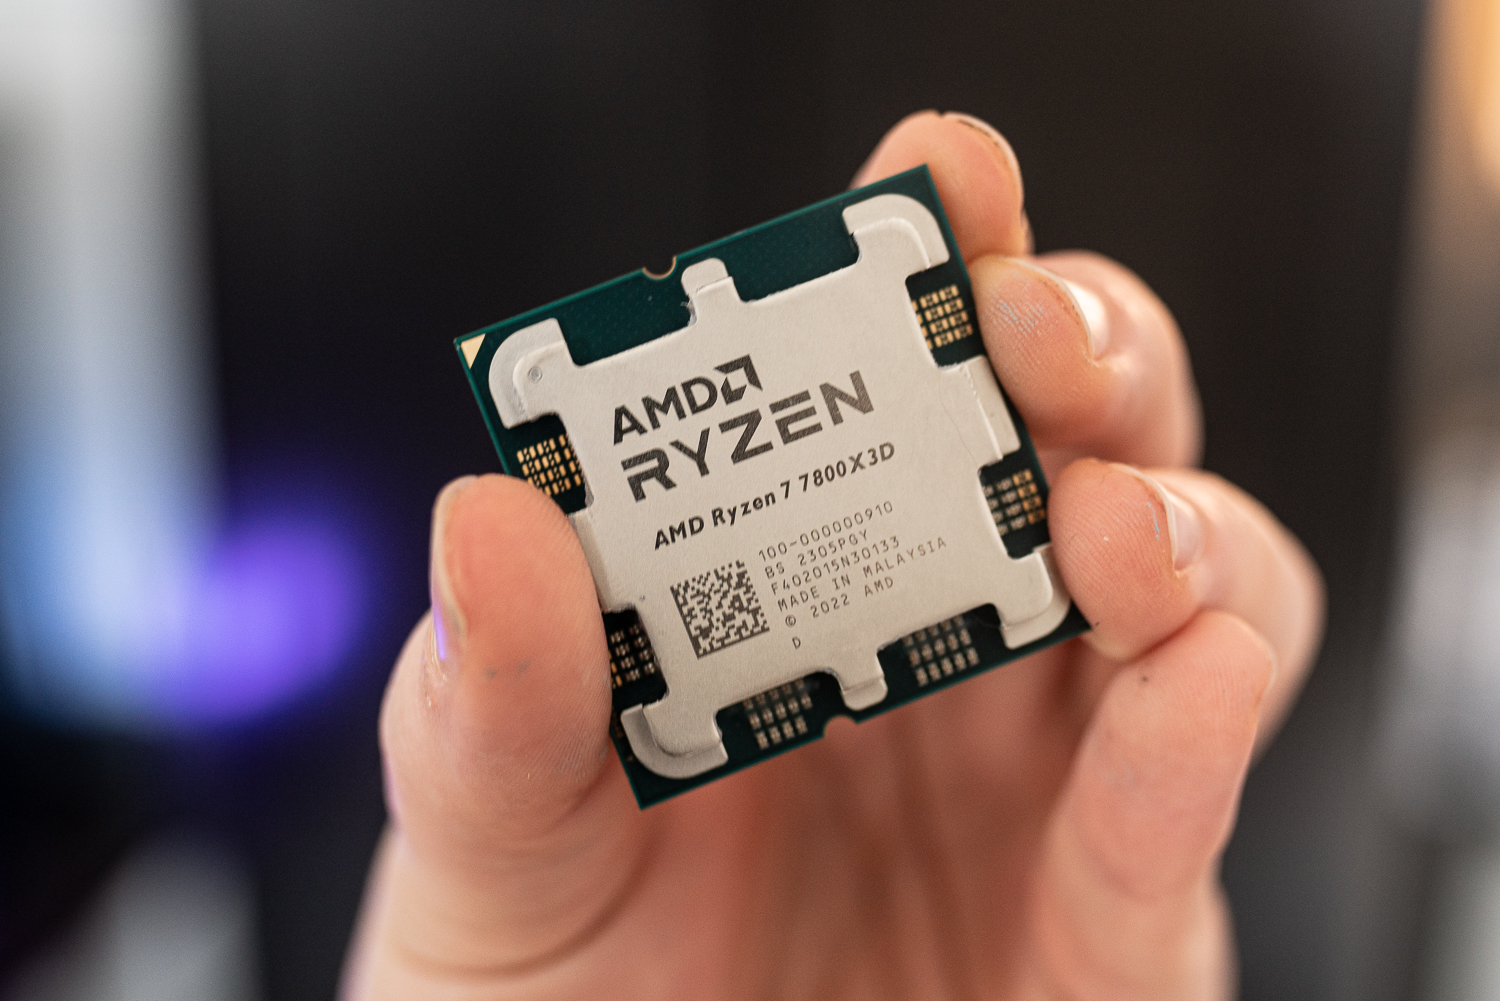 AMD Ryzen 7 7800X3D review: AMD made a mistake | Digital Trends